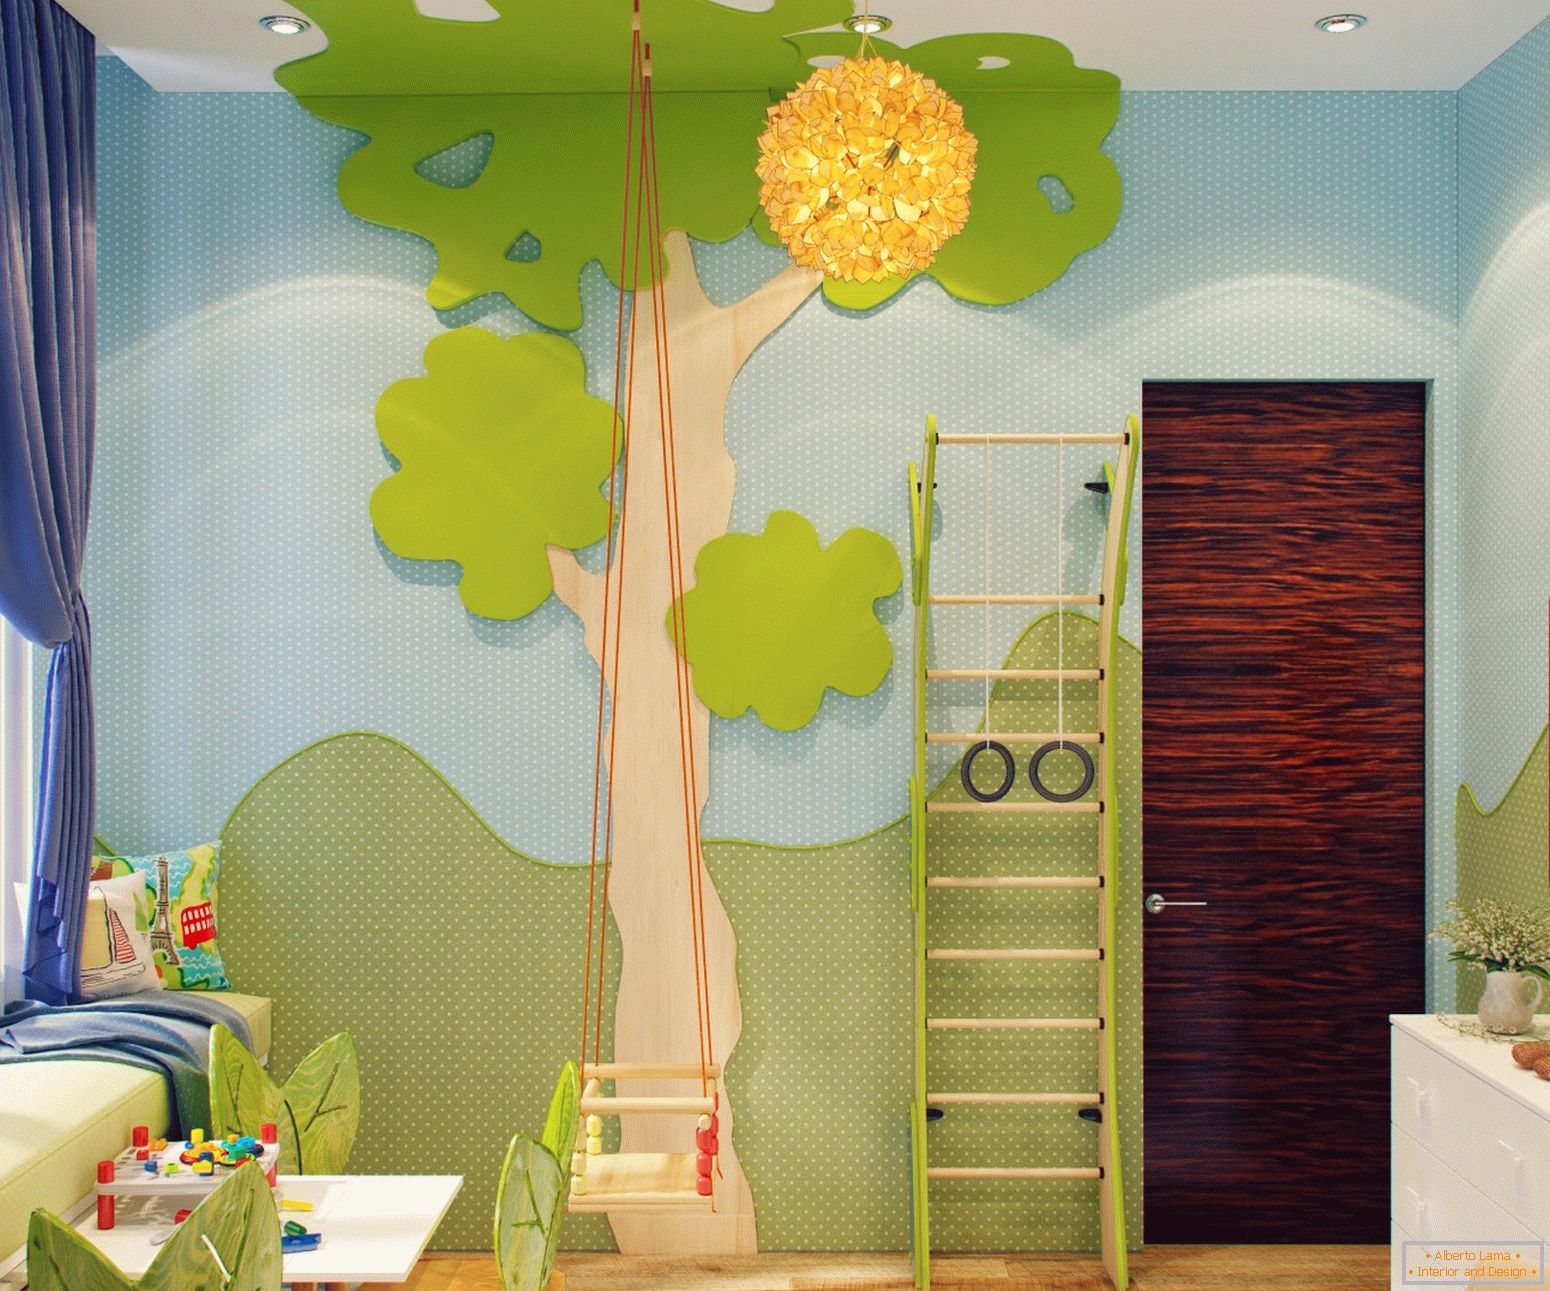 Красив дизайн на малка детска стая